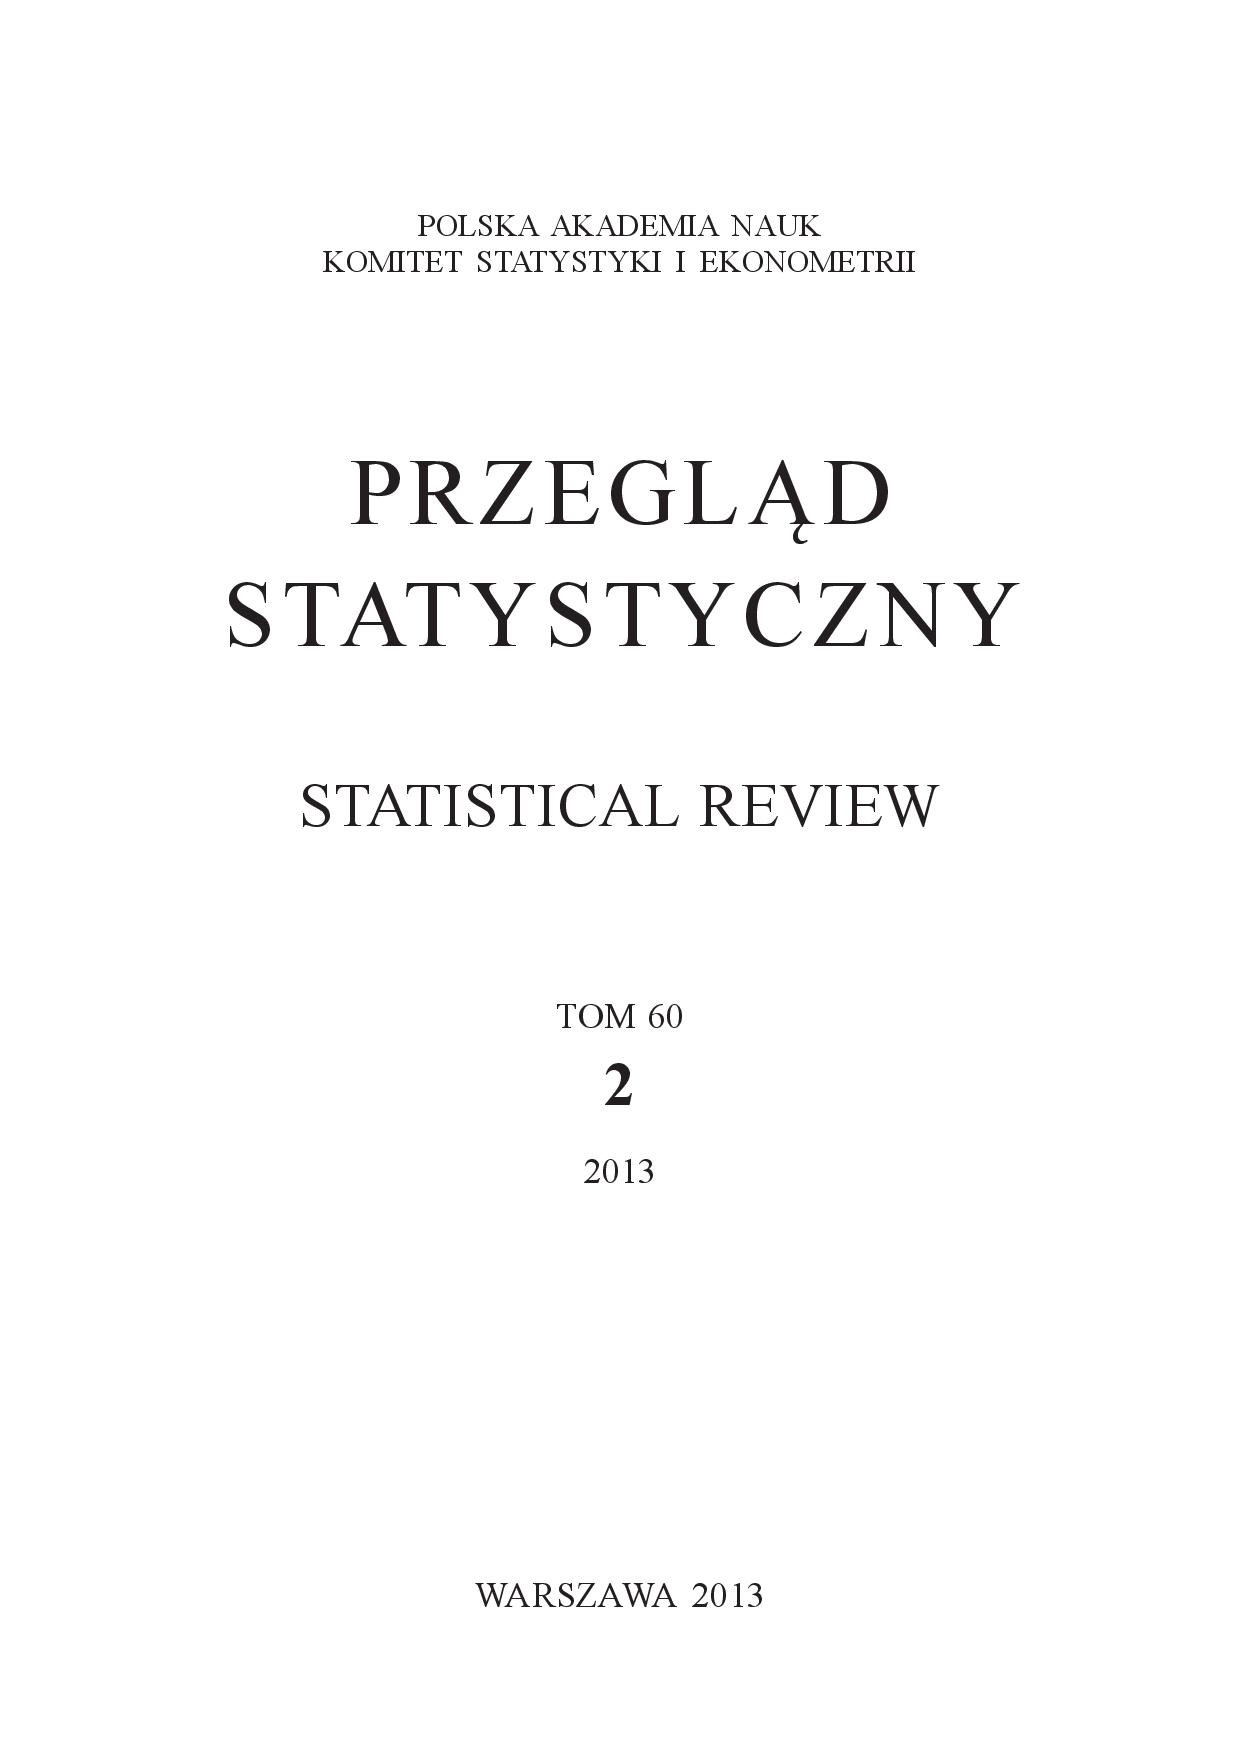 Makroekonomiczny model przestępczości i systemu egzekucji prawa dla Polski. Struktura i własności w świetle analizy mnożnikowej